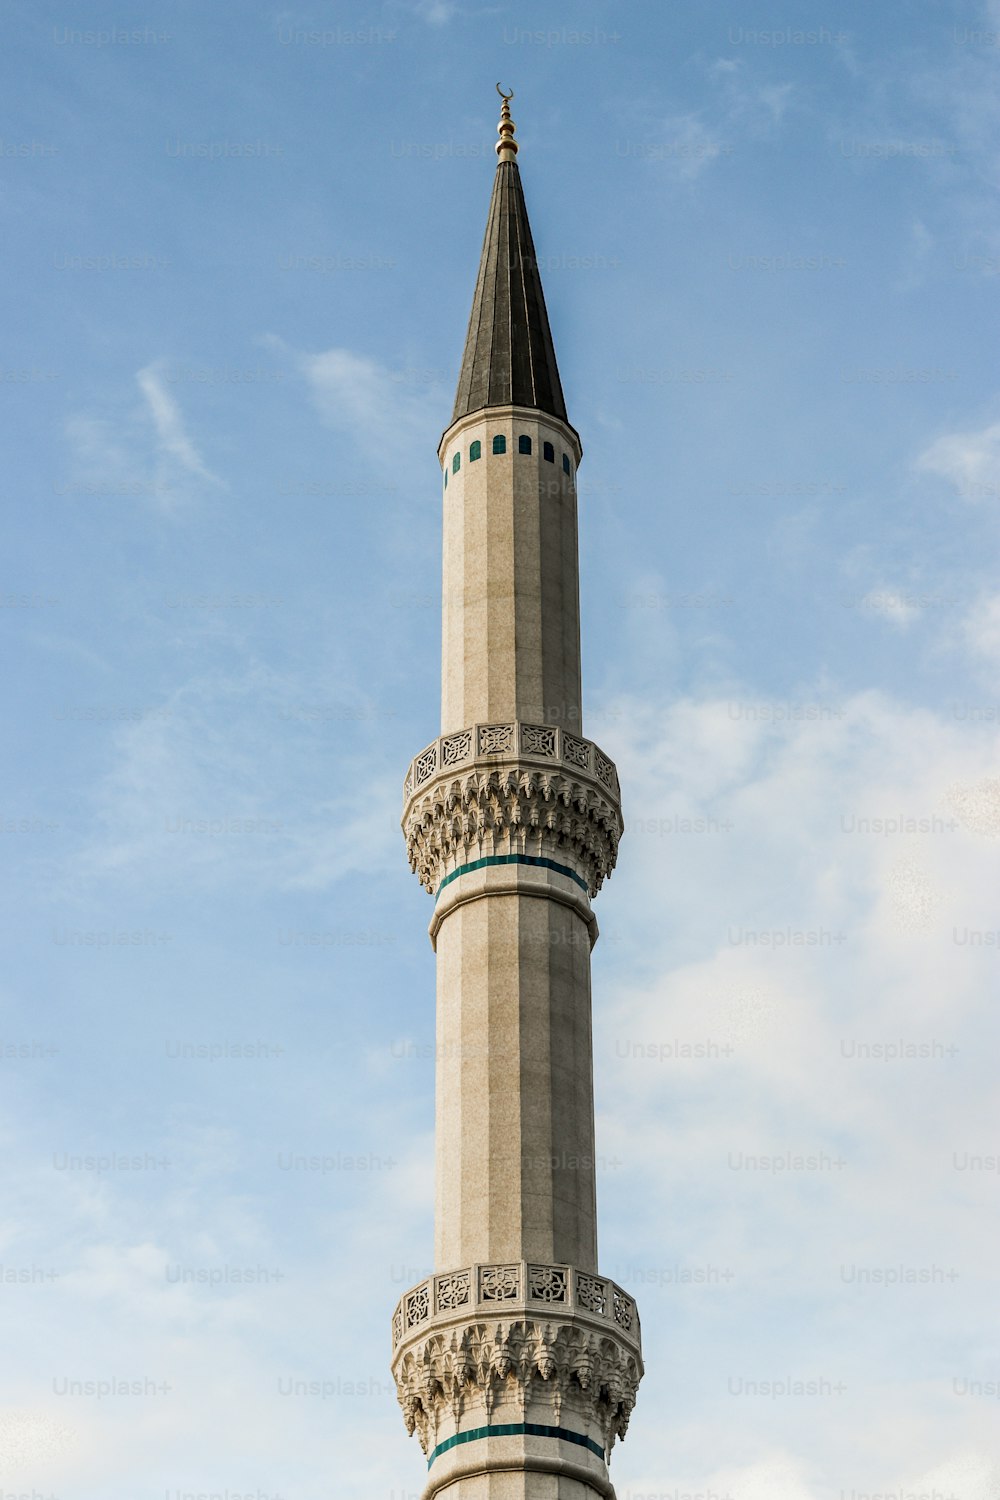 uma torre alta com um relógio no topo dela